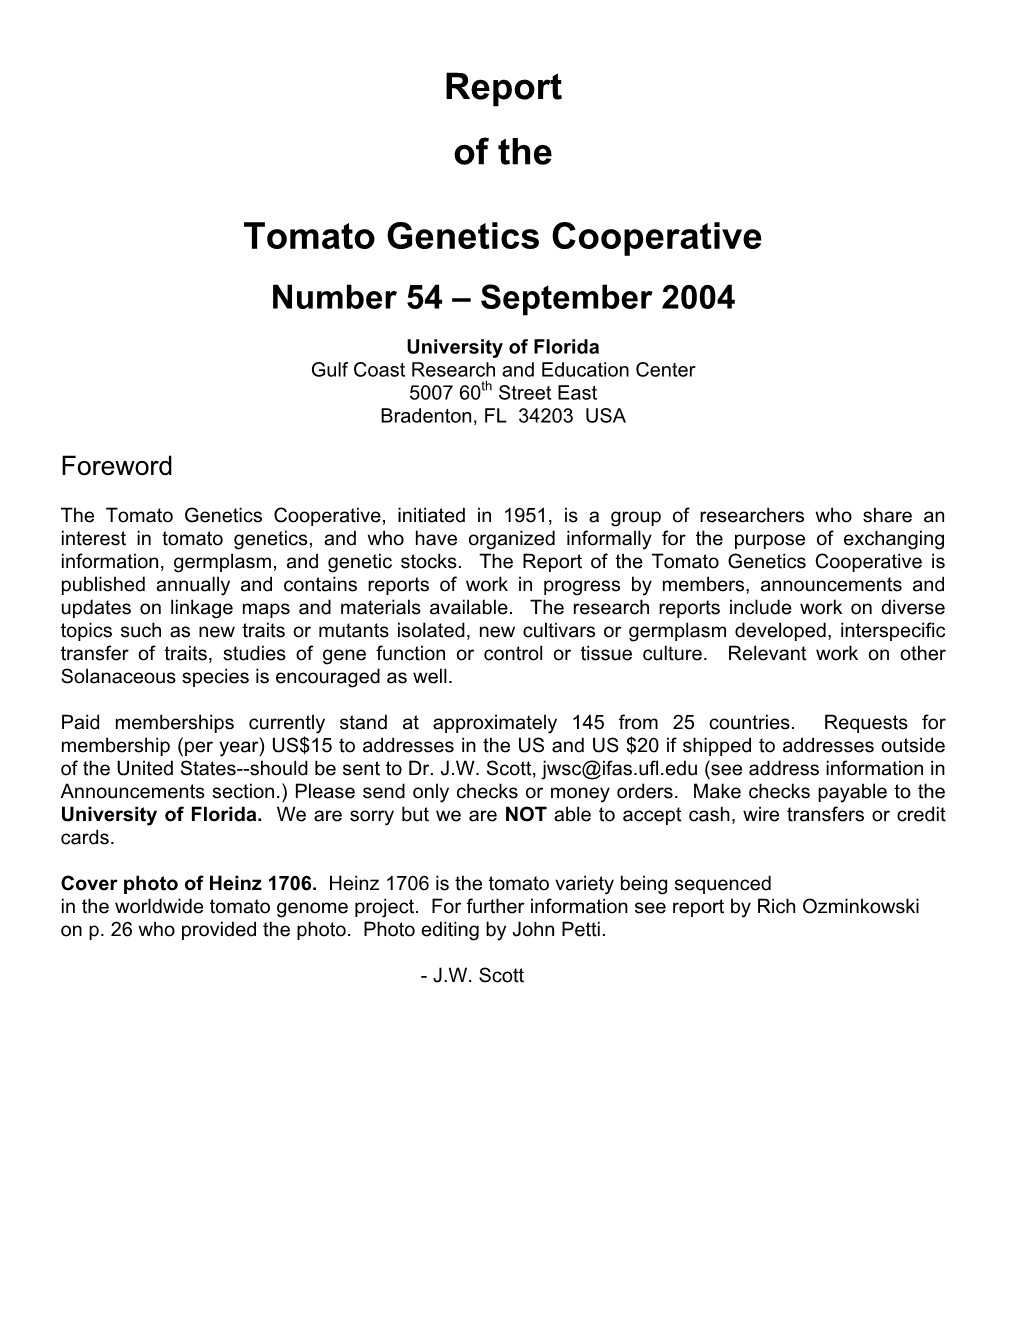 Report of the Tomato Genetics Cooperative